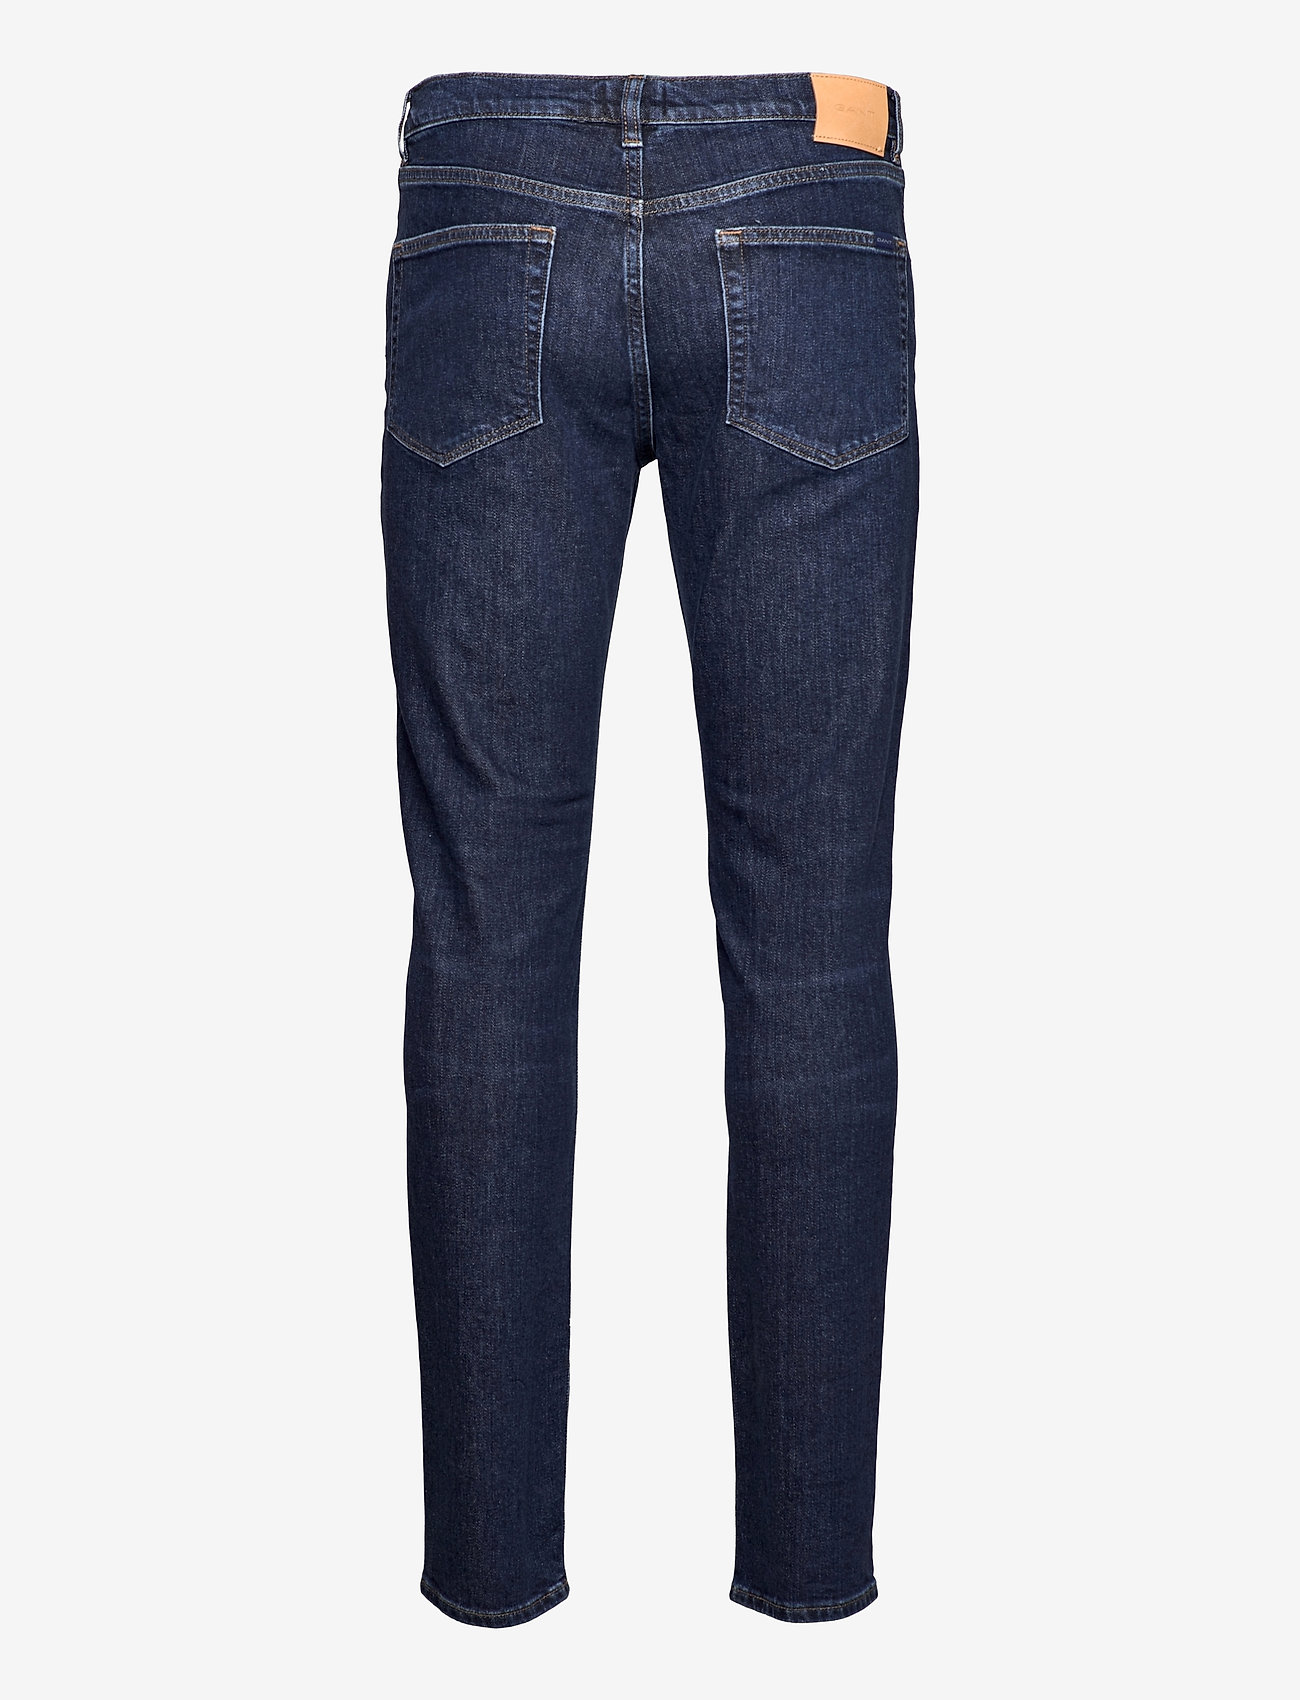 GANT - HAYES GANT JEANS - slim jeans - dark blue worn in - 1